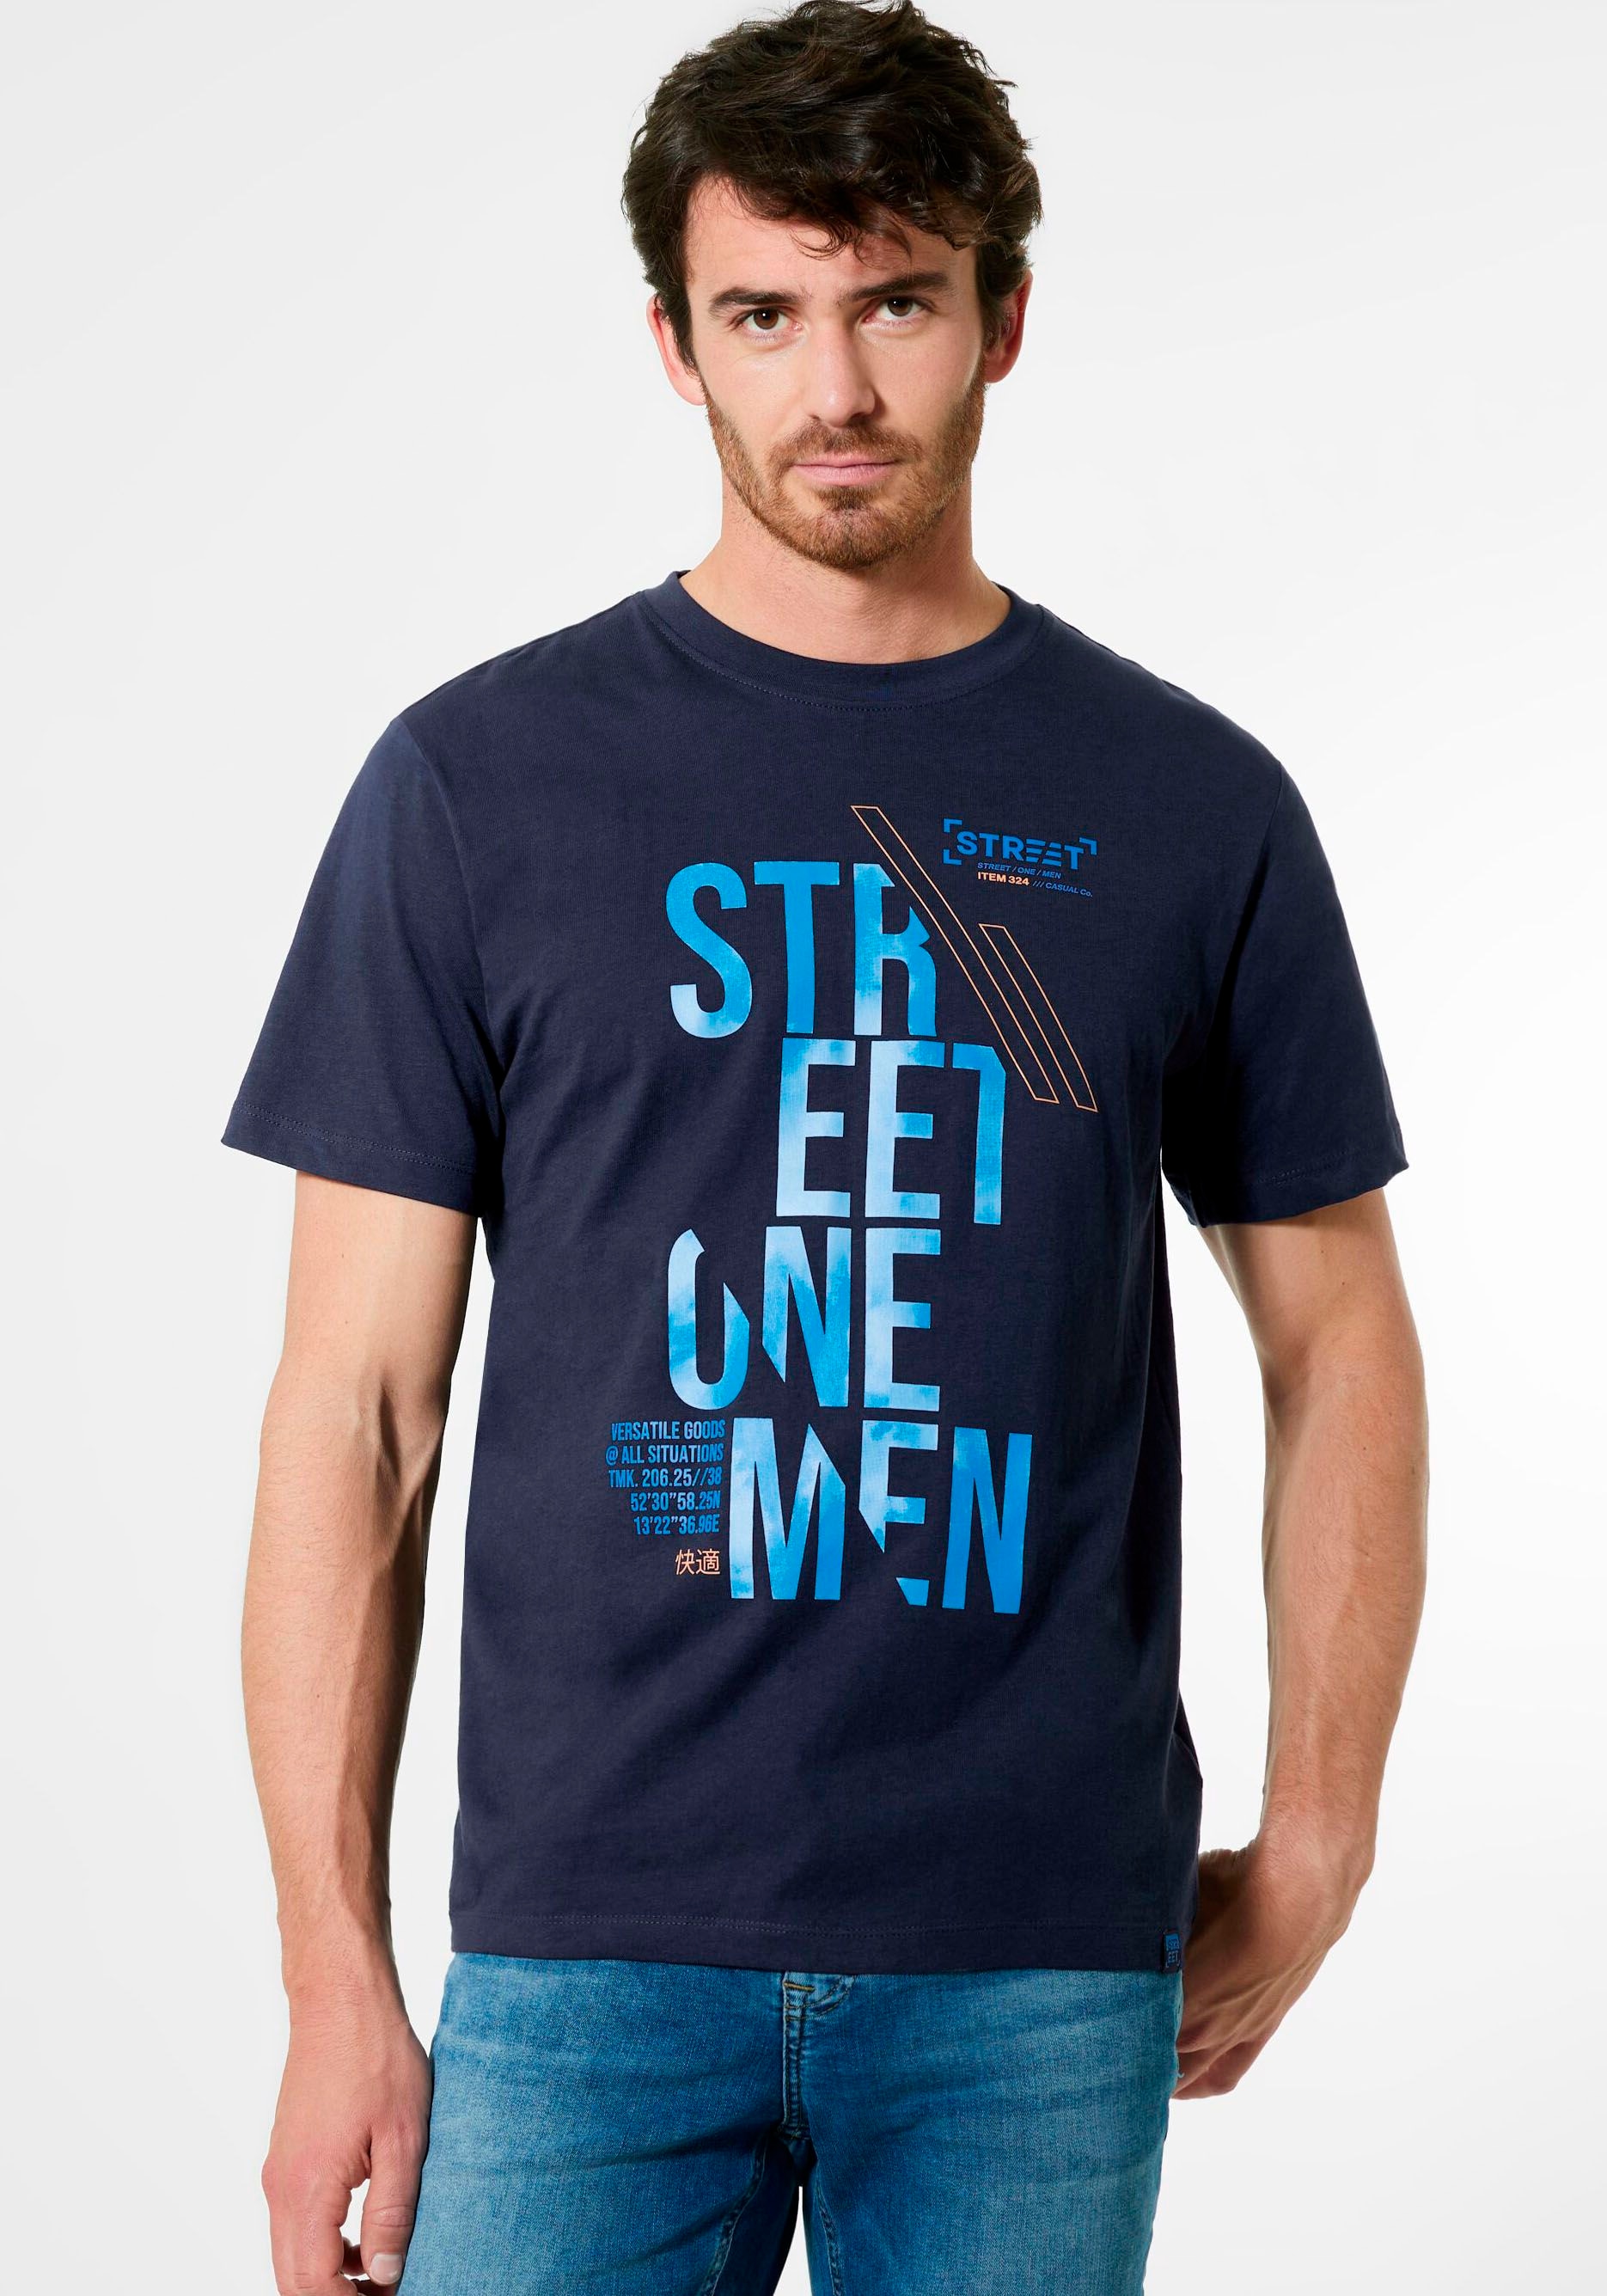 MEN Label-Front-Print OTTO bei online mit T-Shirt, ONE bestellen STREET